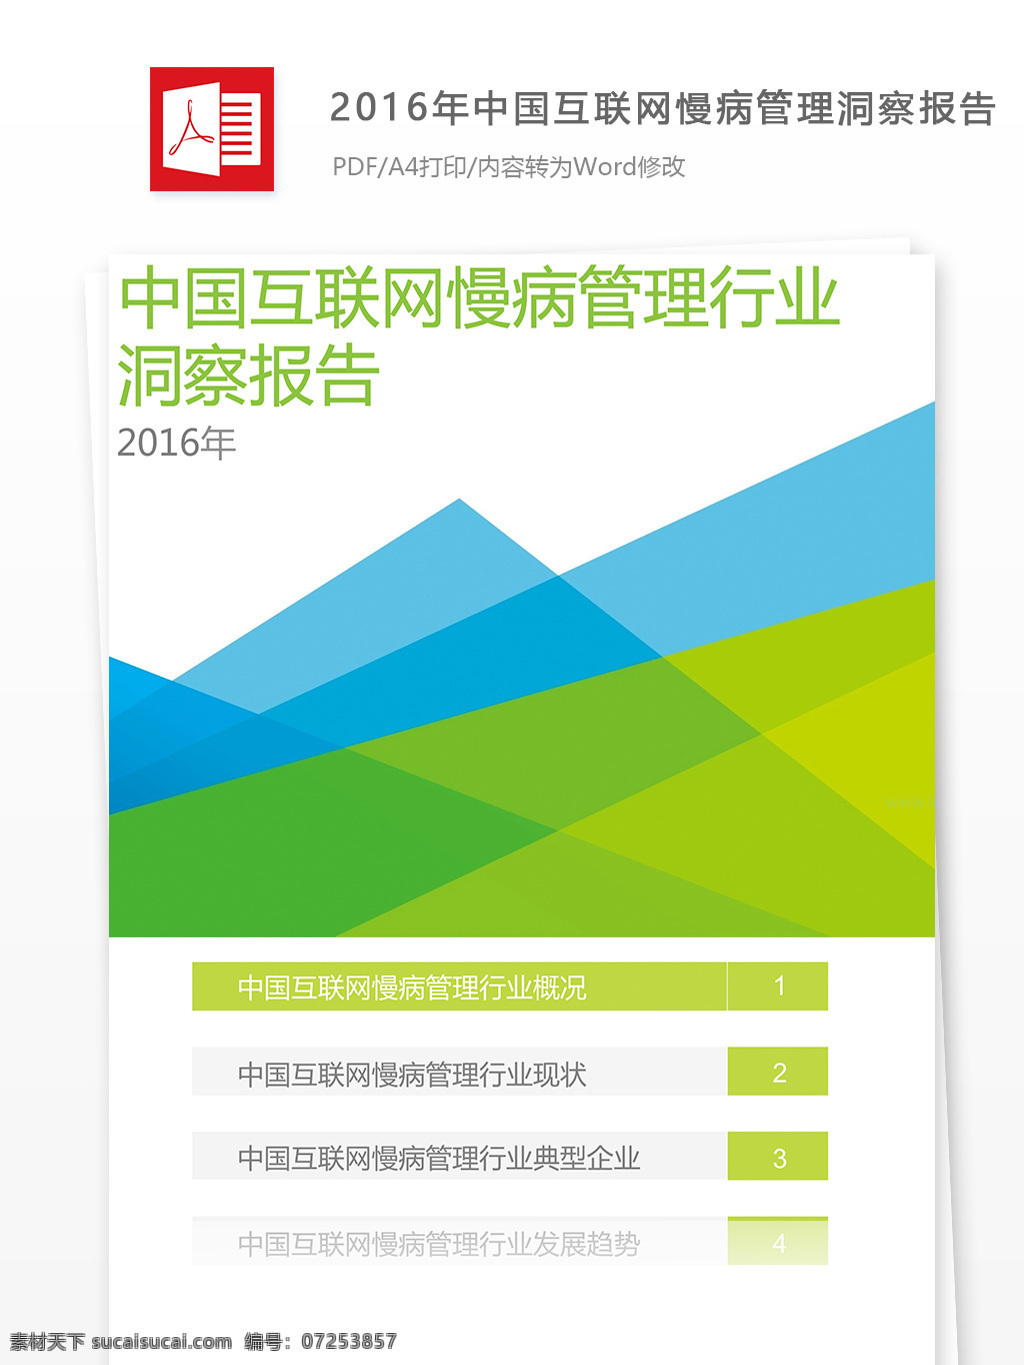 2016 年 中国 互联网 慢 病 管理 洞察 报告 慢性病管理 洞察分析 商业报告 行业分析 数据分析